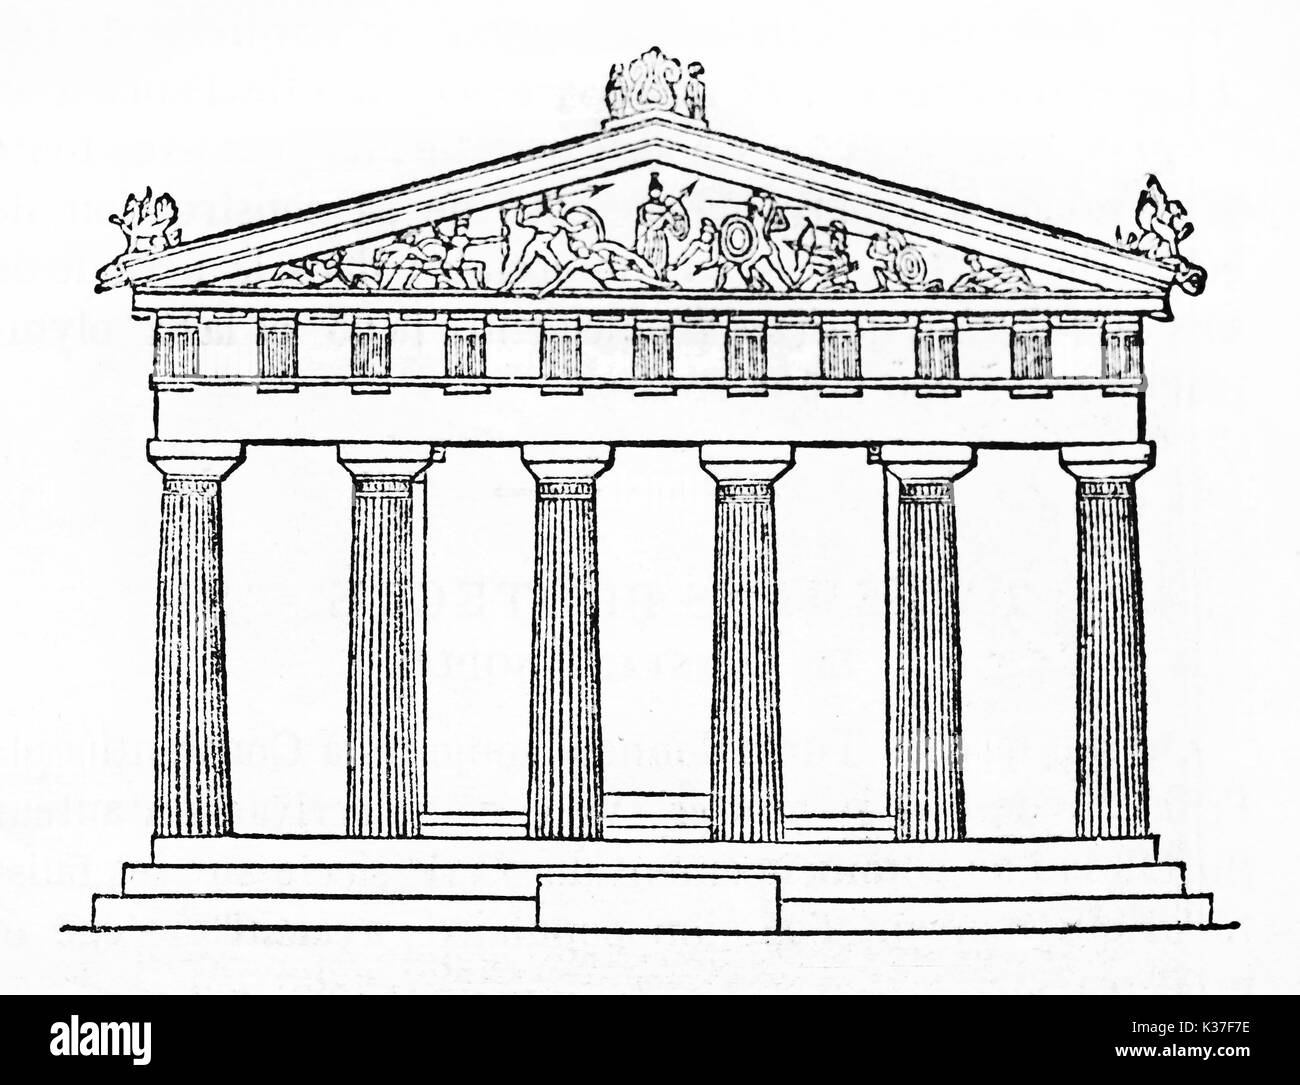 Schematische Darstellung der wichtigsten Seite eines dorischen Stil griechischer Tempel, Tempel von Aphaea, Griechenland. Alte isoliert Abbildung, die durch unbekannte Autor auf Magasin Pittoresque Paris 1834 veröffentlicht. Stockfoto